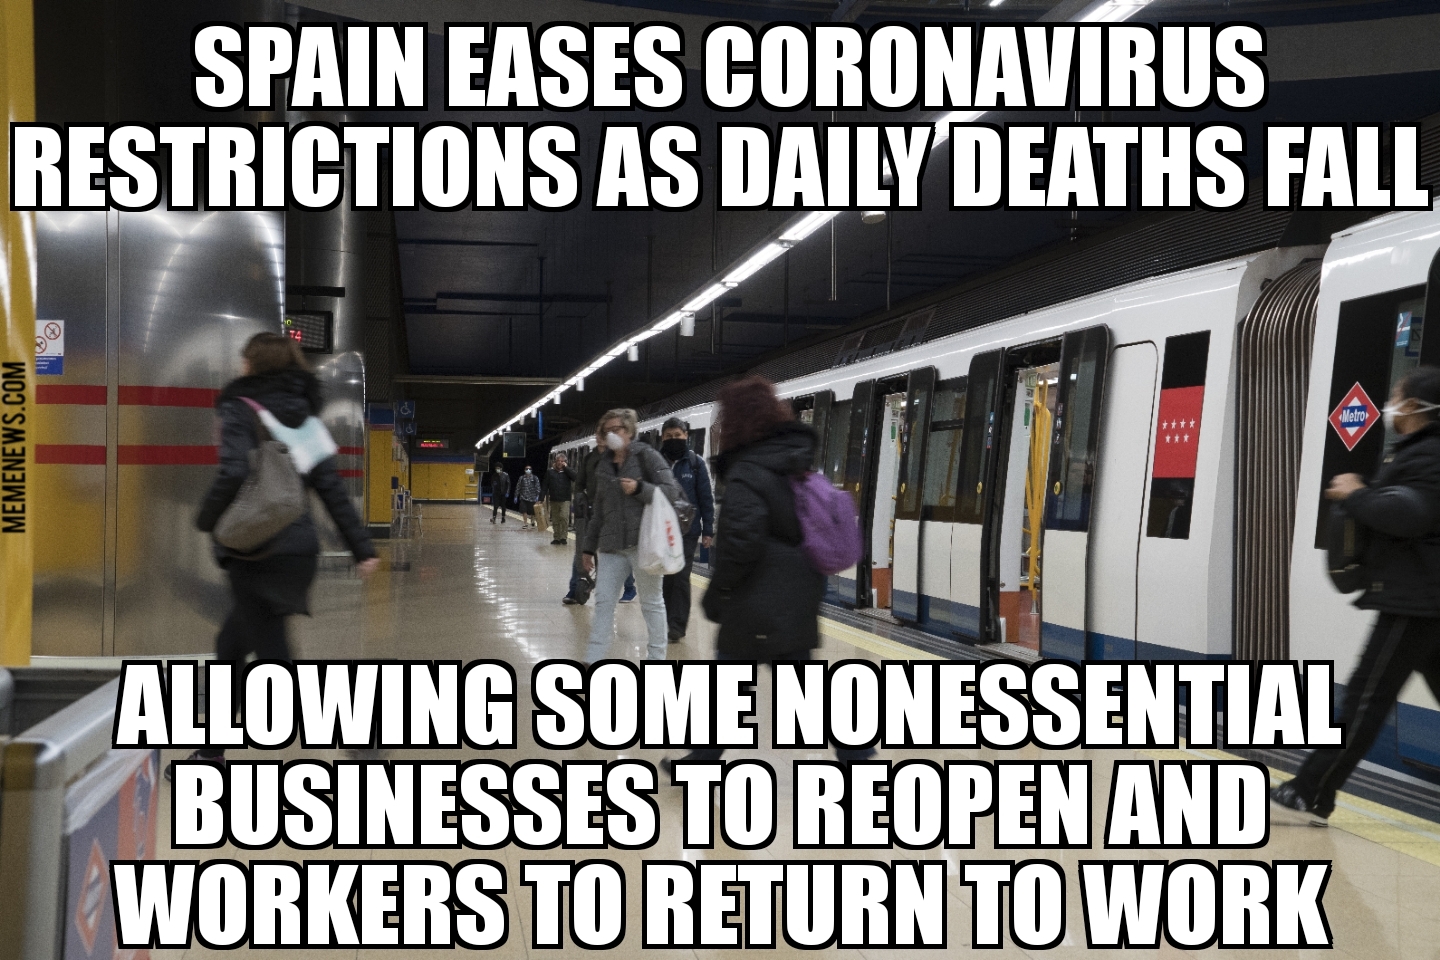 Spain eases coronavirus restrictions